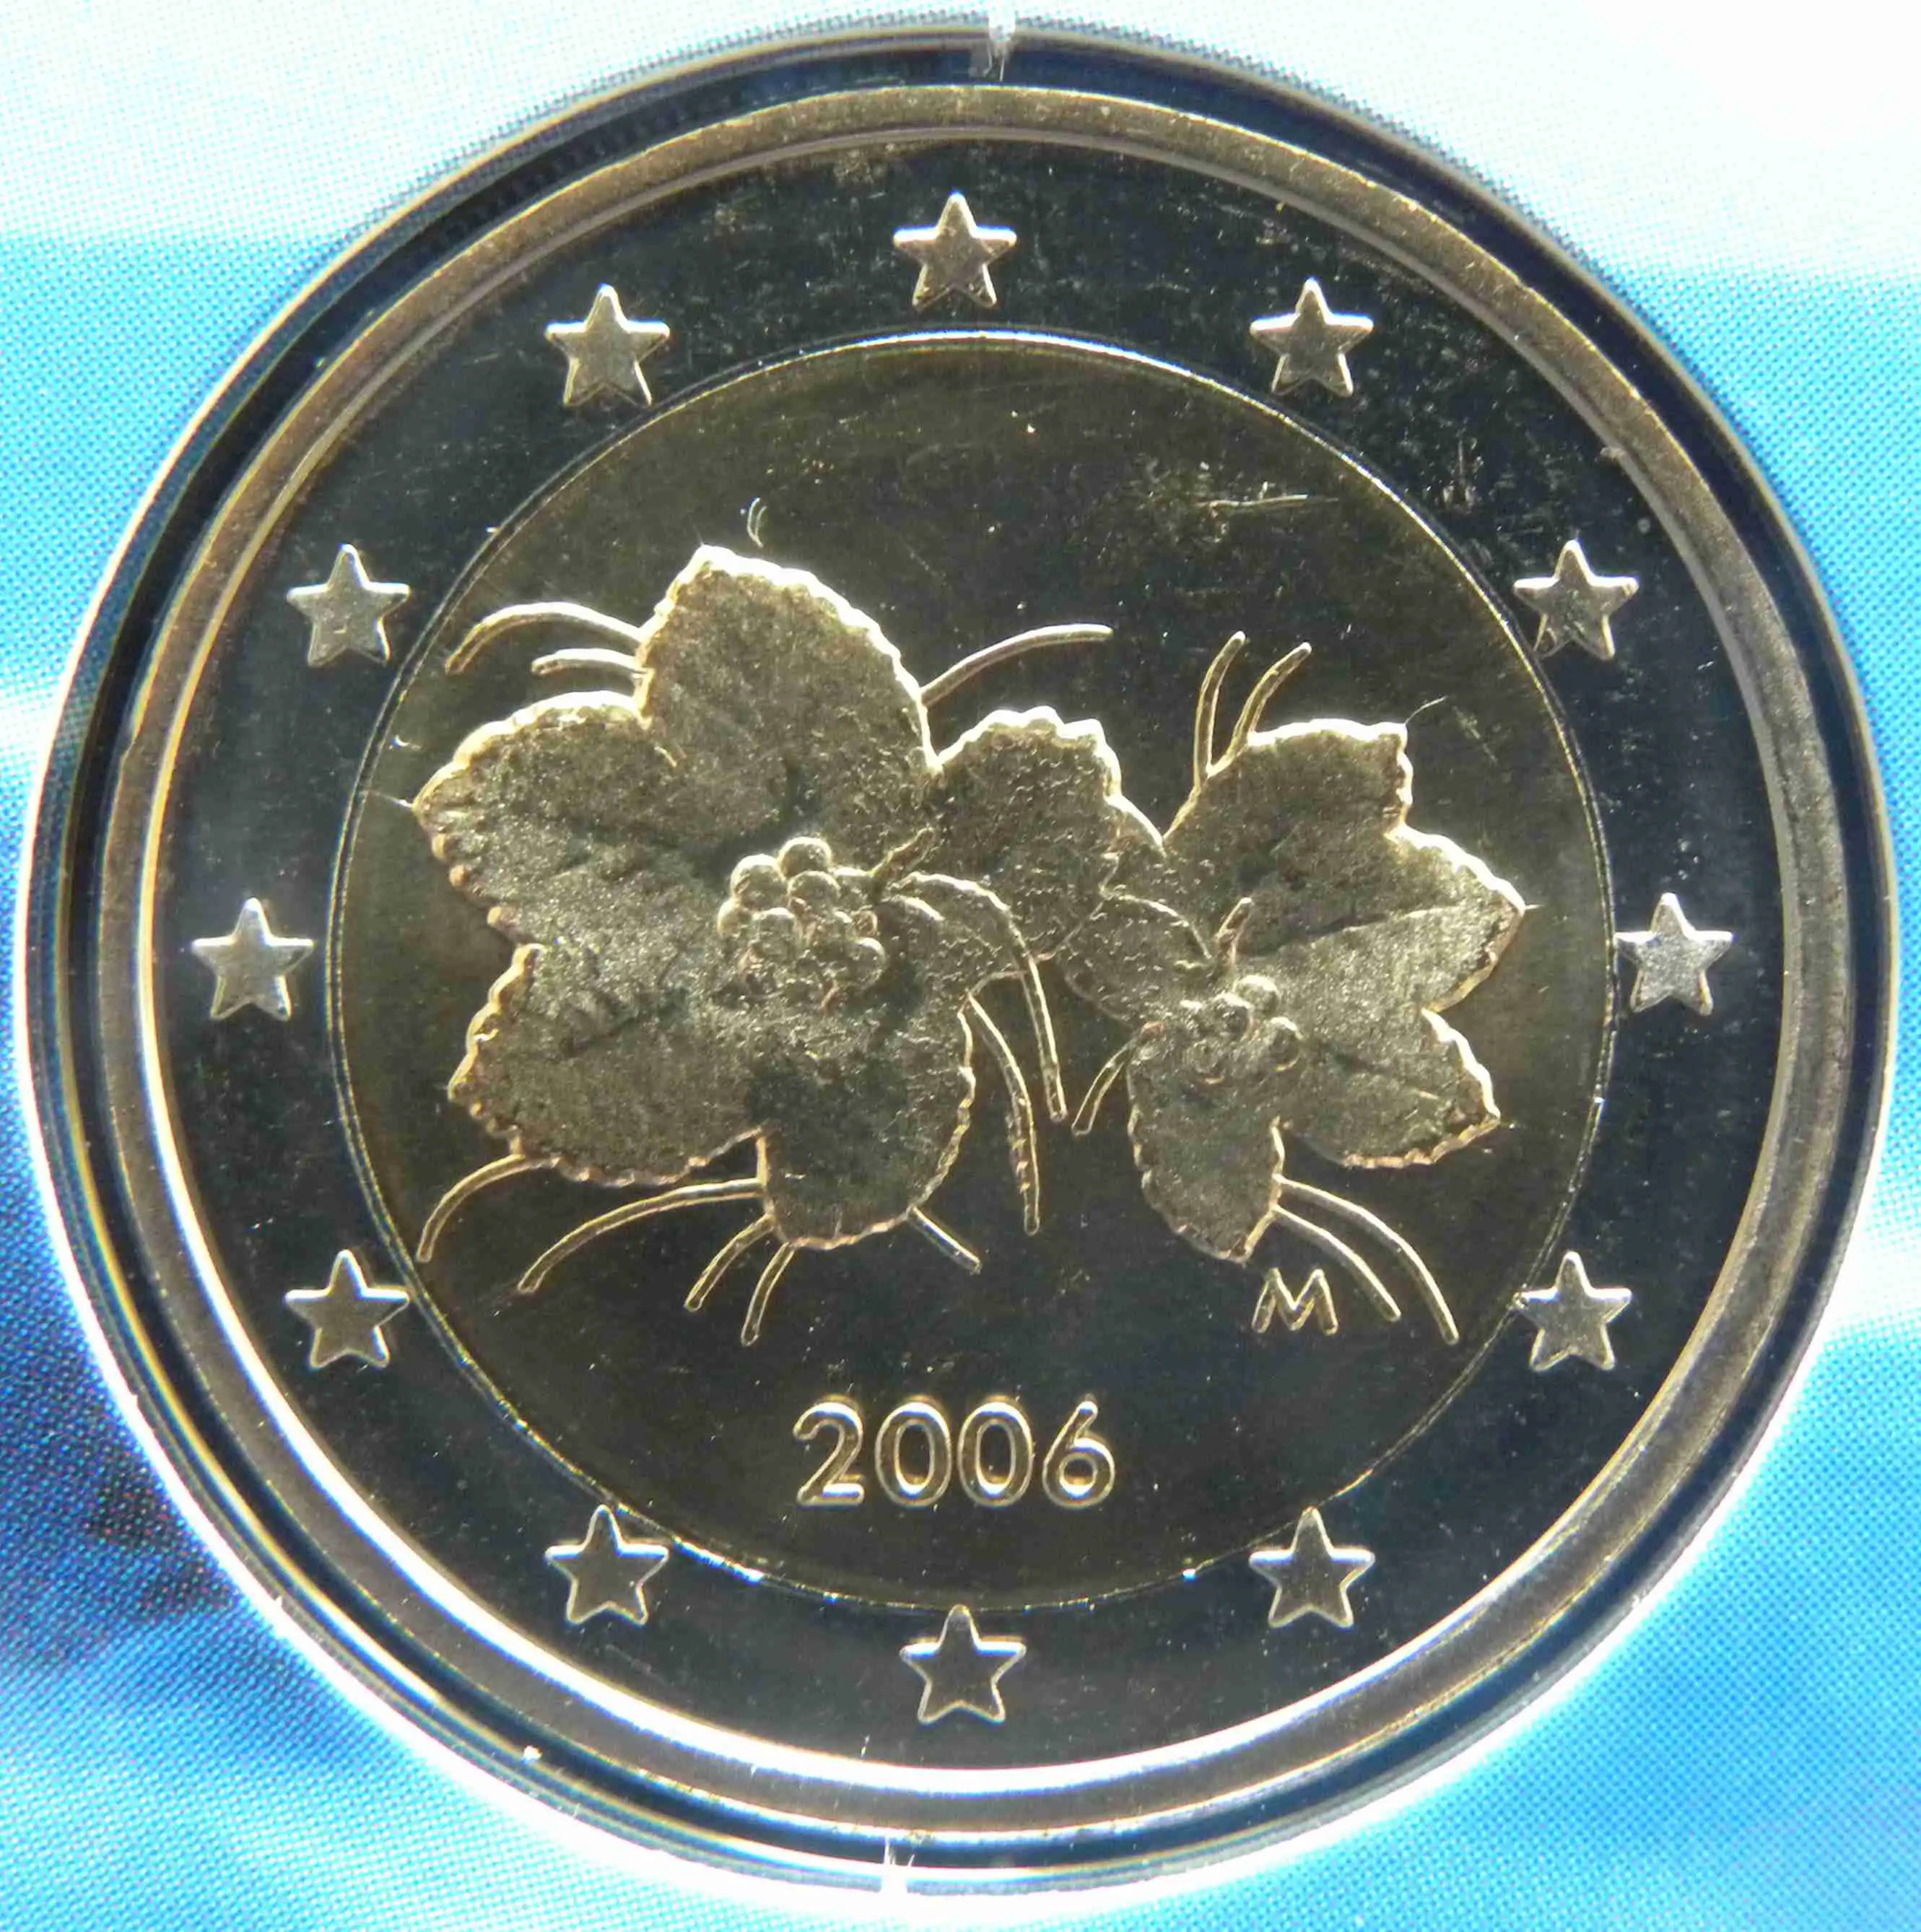 2 euro coin 2006